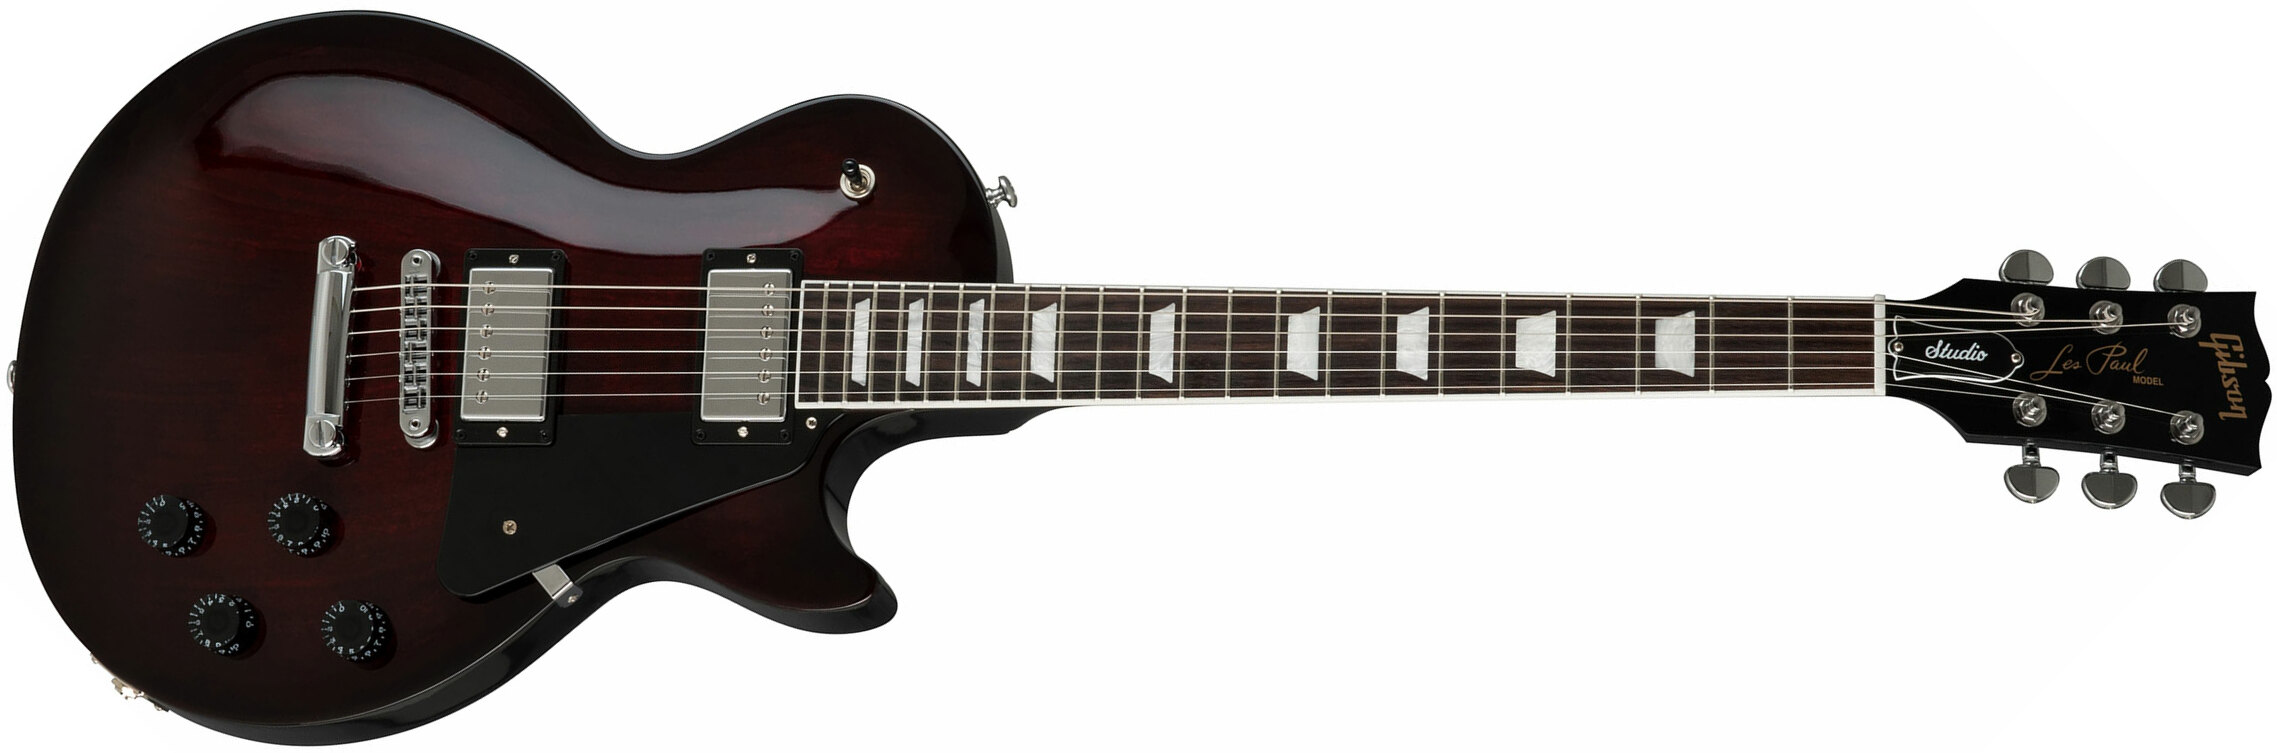 Gibson Les Paul Studio 2019 Hh Ht Rw - Bbq Burst - Enkel gesneden elektrische gitaar - Main picture